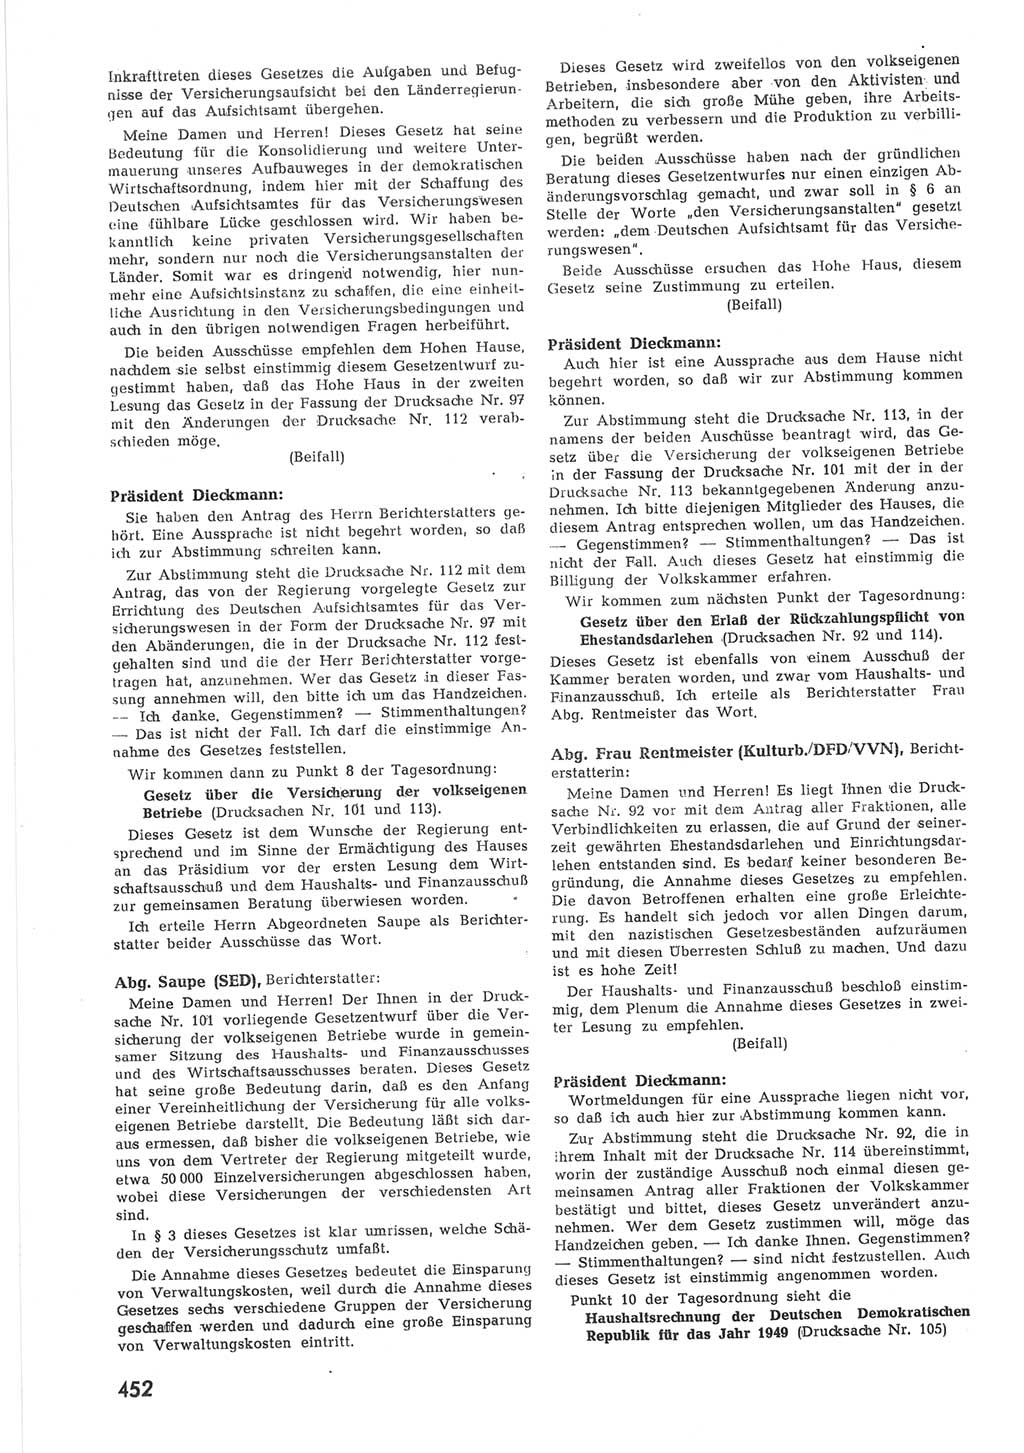 Provisorische Volkskammer (VK) der Deutschen Demokratischen Republik (DDR) 1949-1950, Dokument 470 (Prov. VK DDR 1949-1950, Dok. 470)